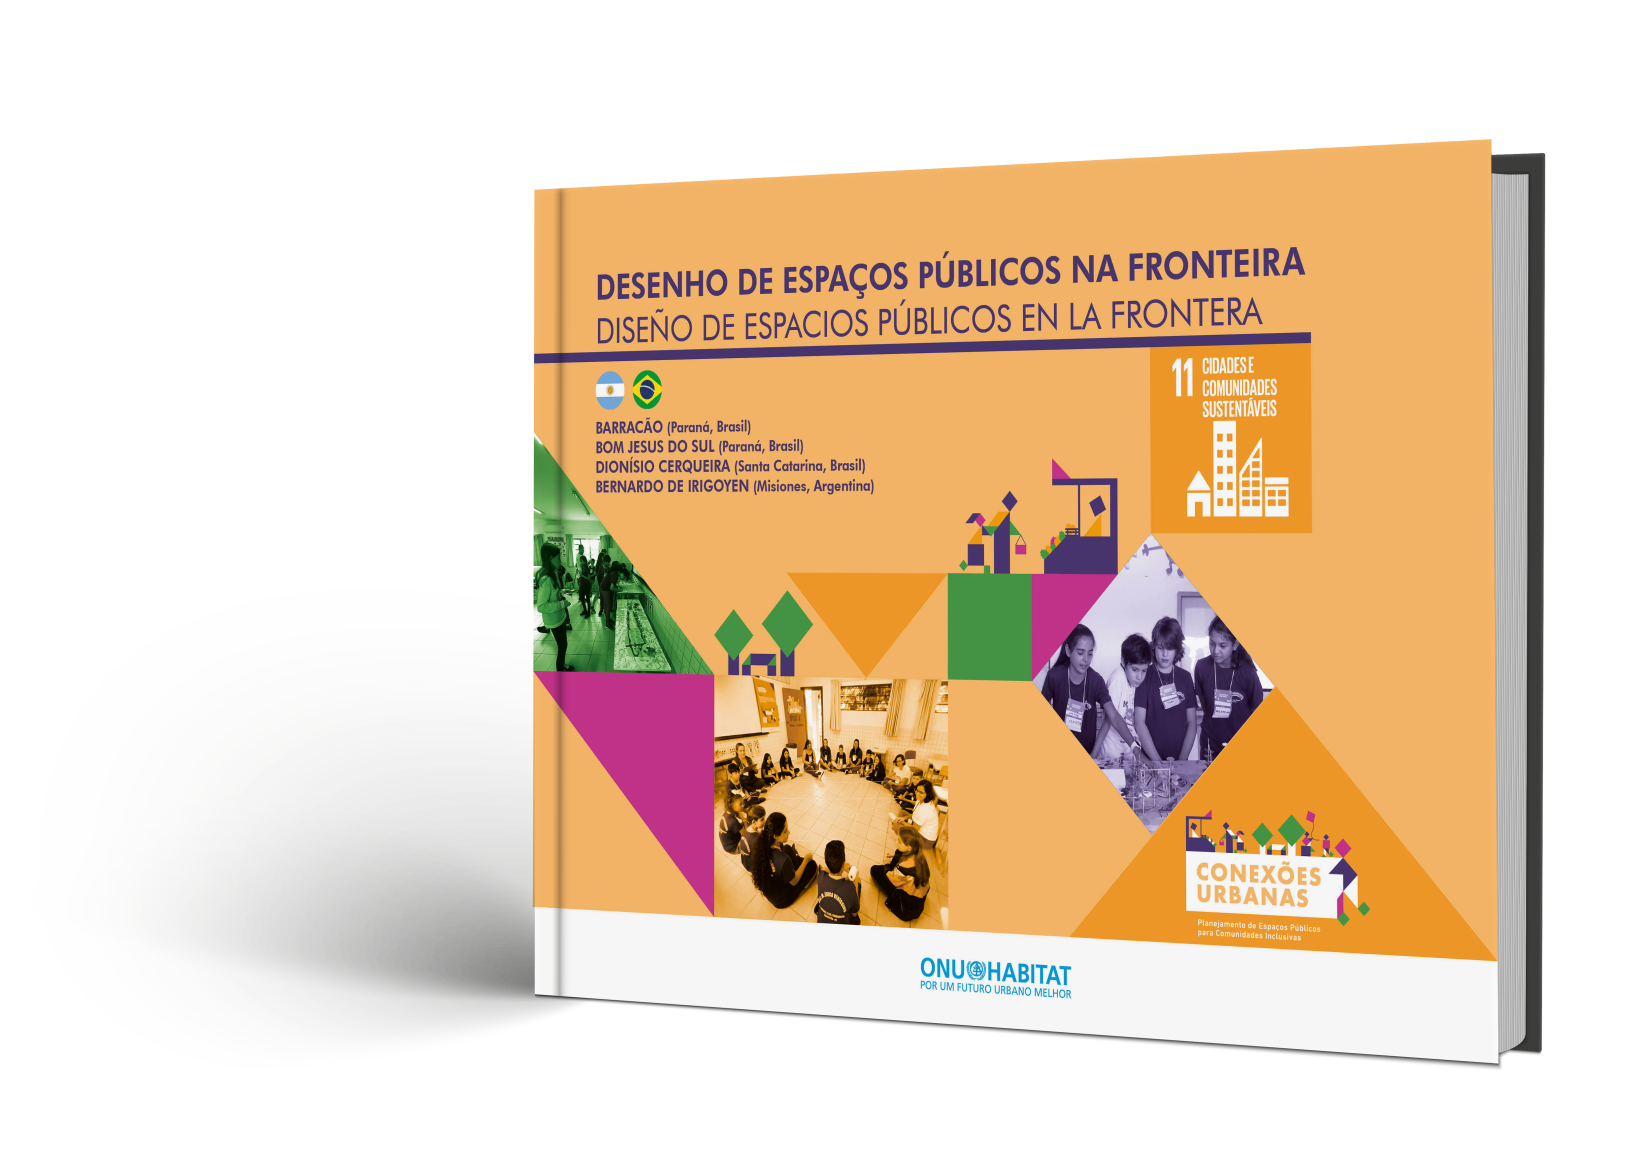 Relatório apresenta os resultados das oficinas de Desenhos de Espaços Públicos aplicadas na região, explicando desde como funciona a metodologia até o resultado final das intervenções. 